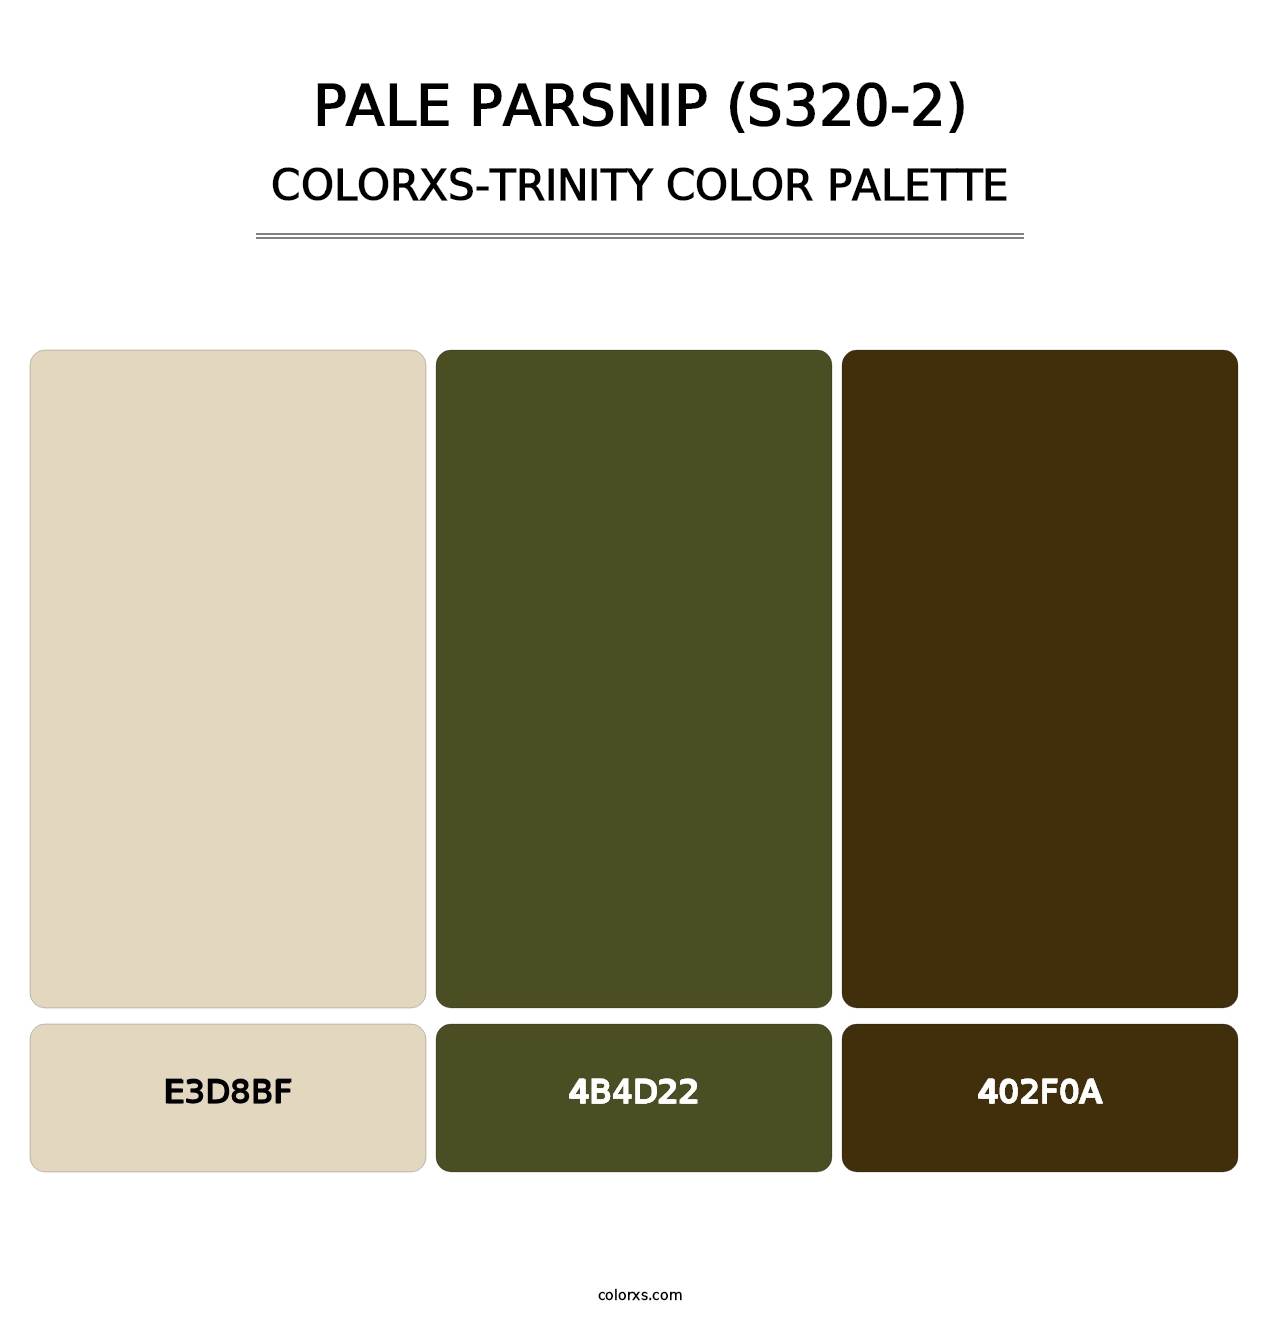 Pale Parsnip (S320-2) - Colorxs Trinity Palette